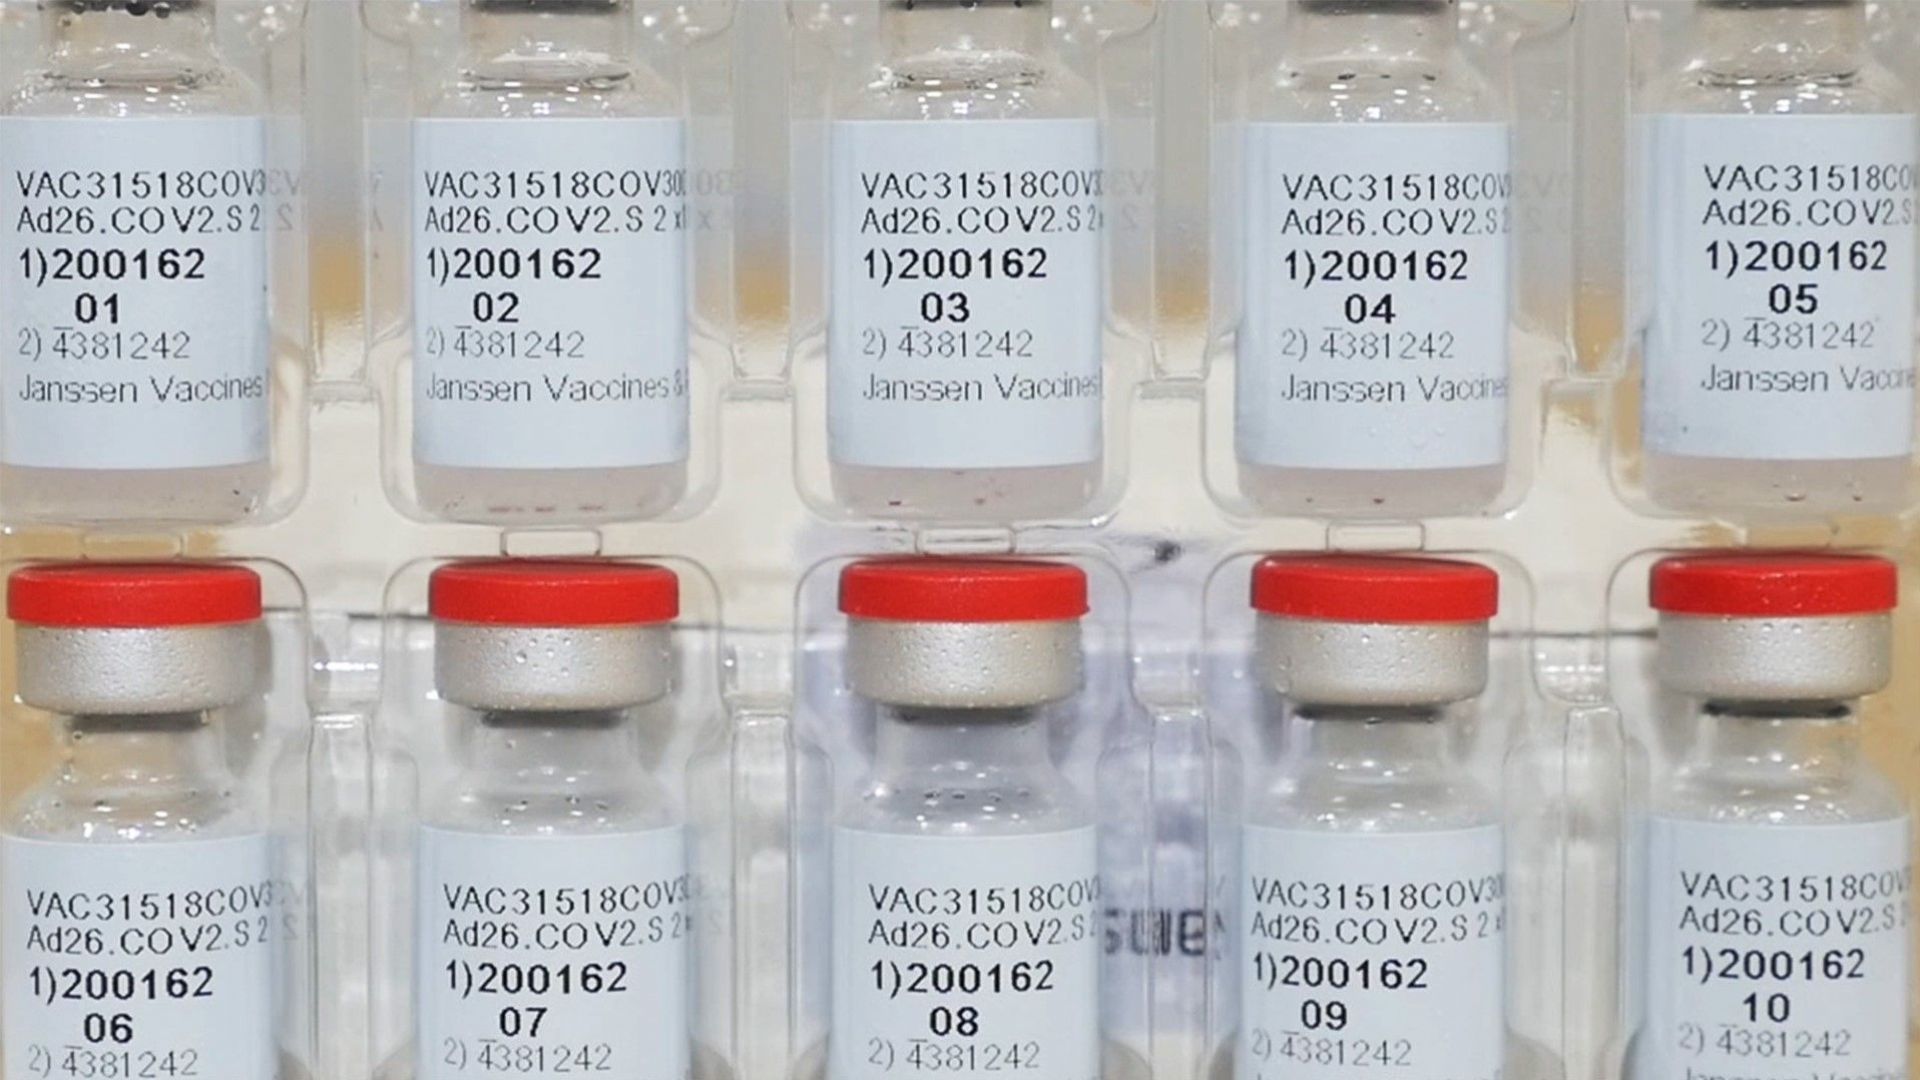 "Джонсън и Джонсън" ще започне доставки на ваксината си в Европа от 19 април